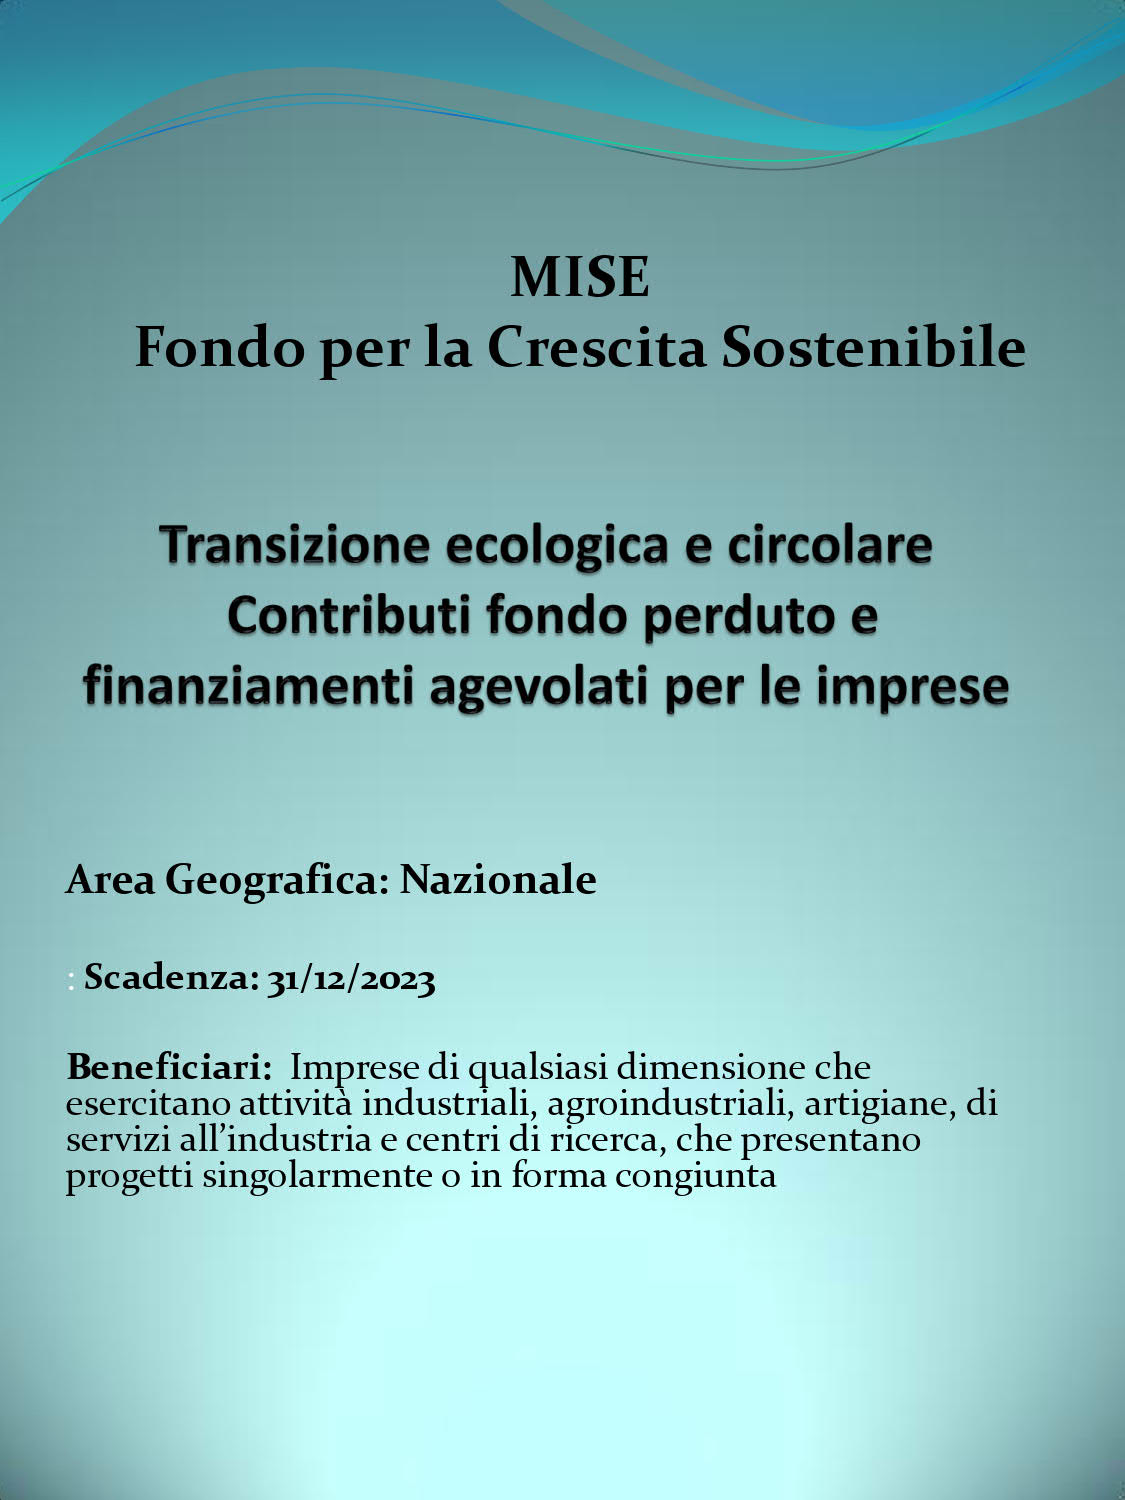 Transizione ecologica e circolare - Gruppo Cestari